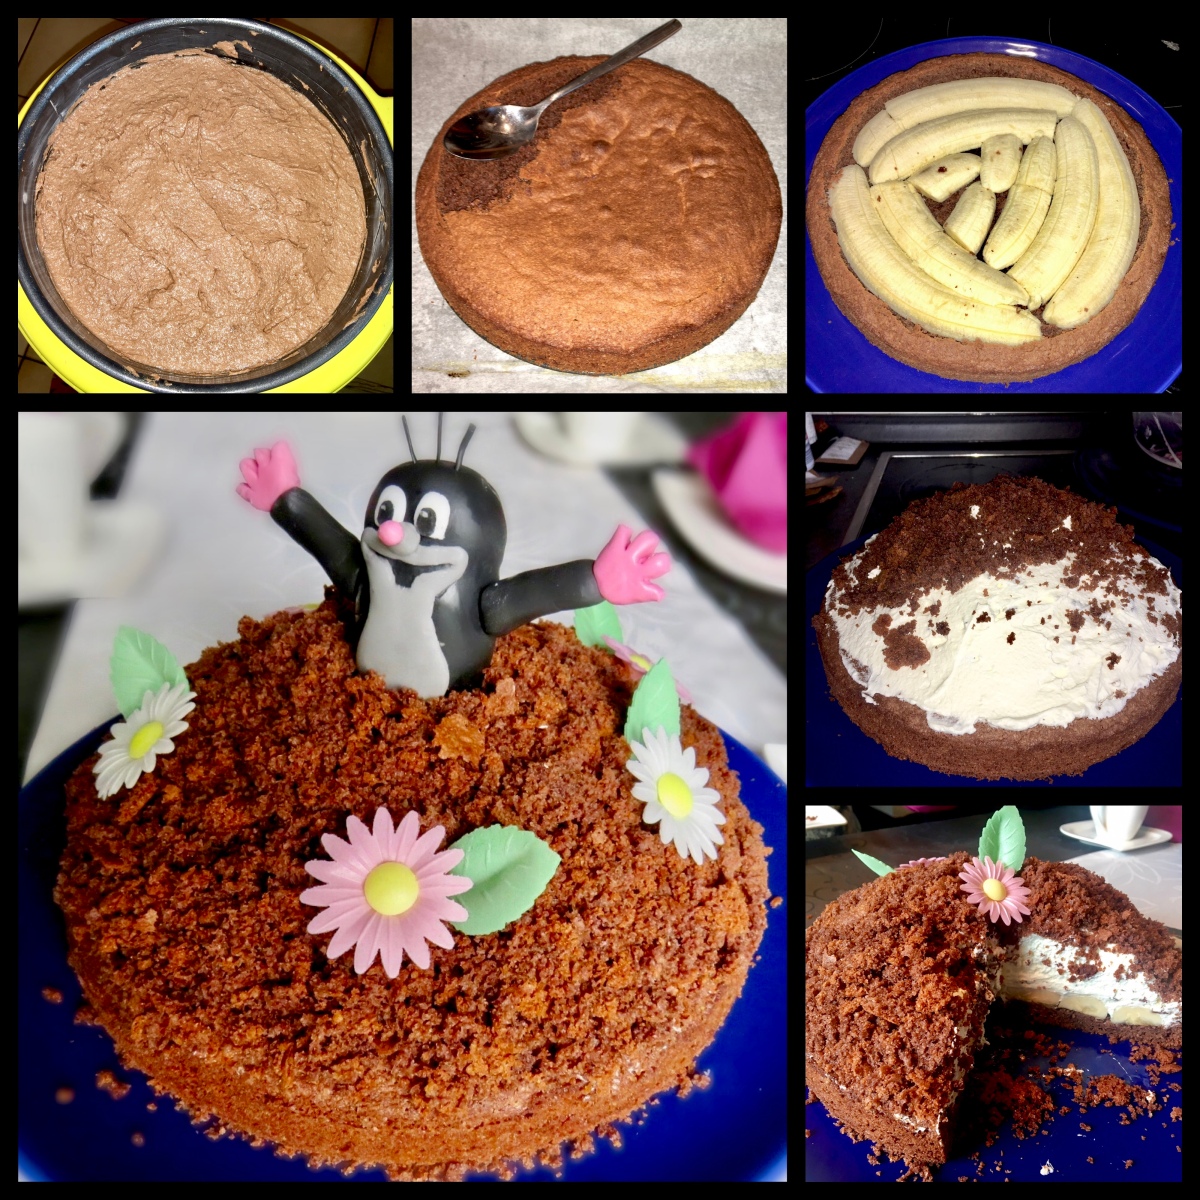 Maulwurf Torte (Mole cake) | Sabrinas Küchenchaos